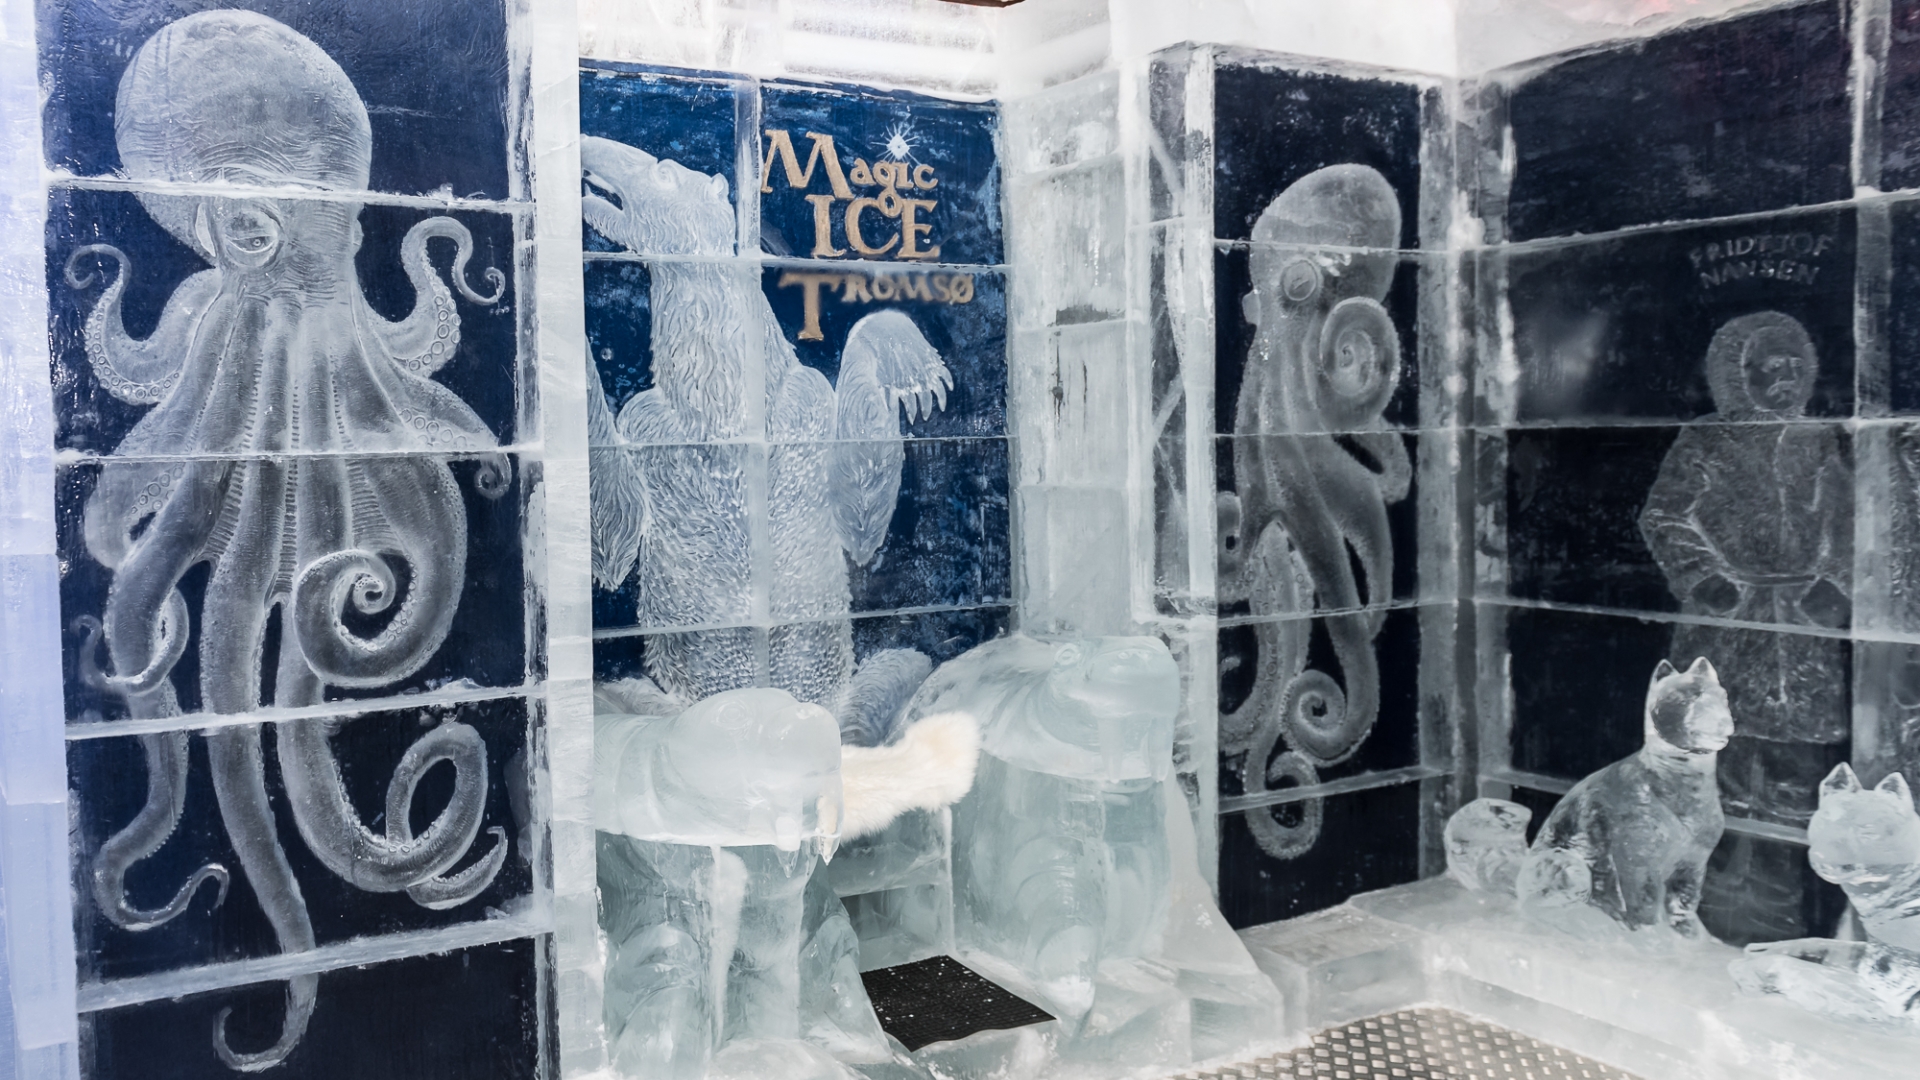 Magic Ice in Tromsø City Centre